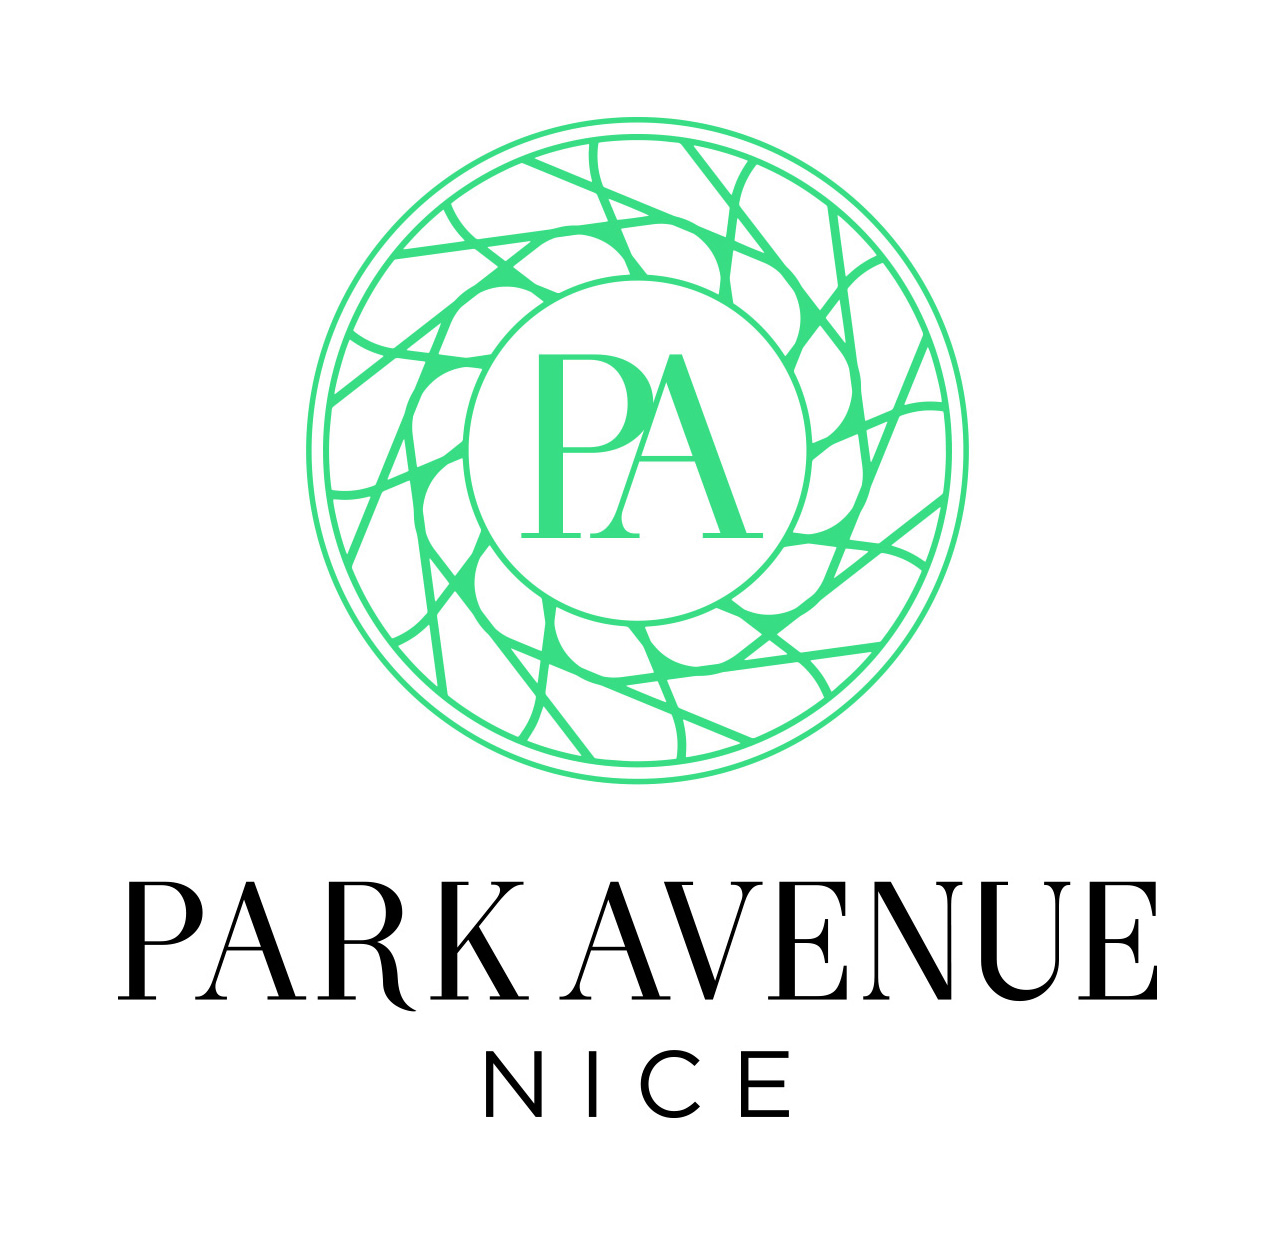 Park Avenue Nice